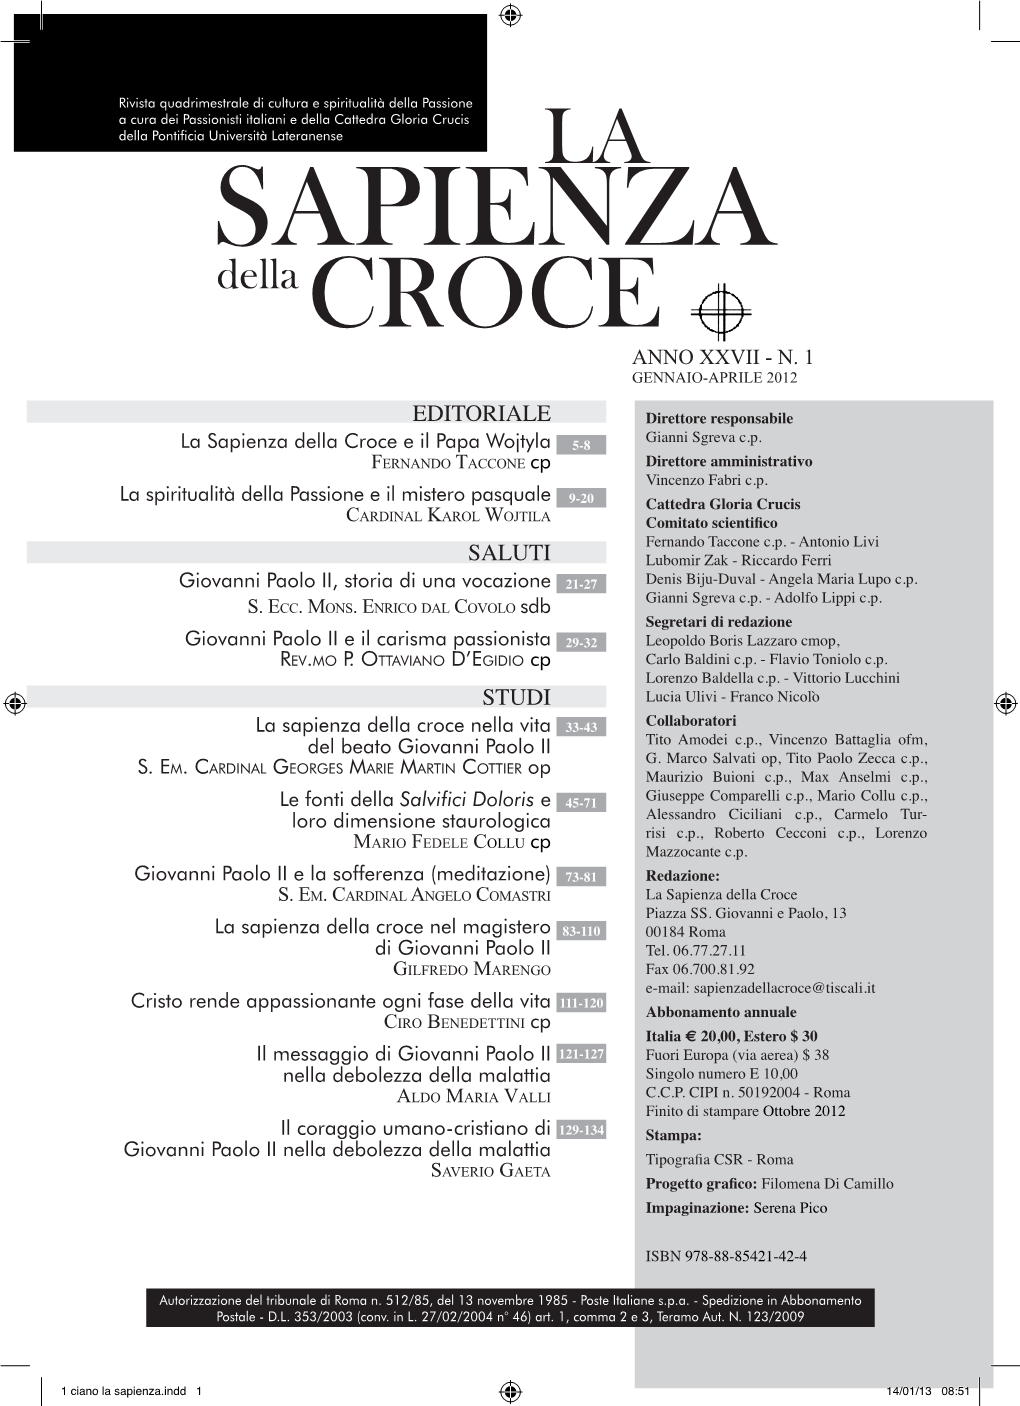 Sapienza Della Croce Anno XXVII - N